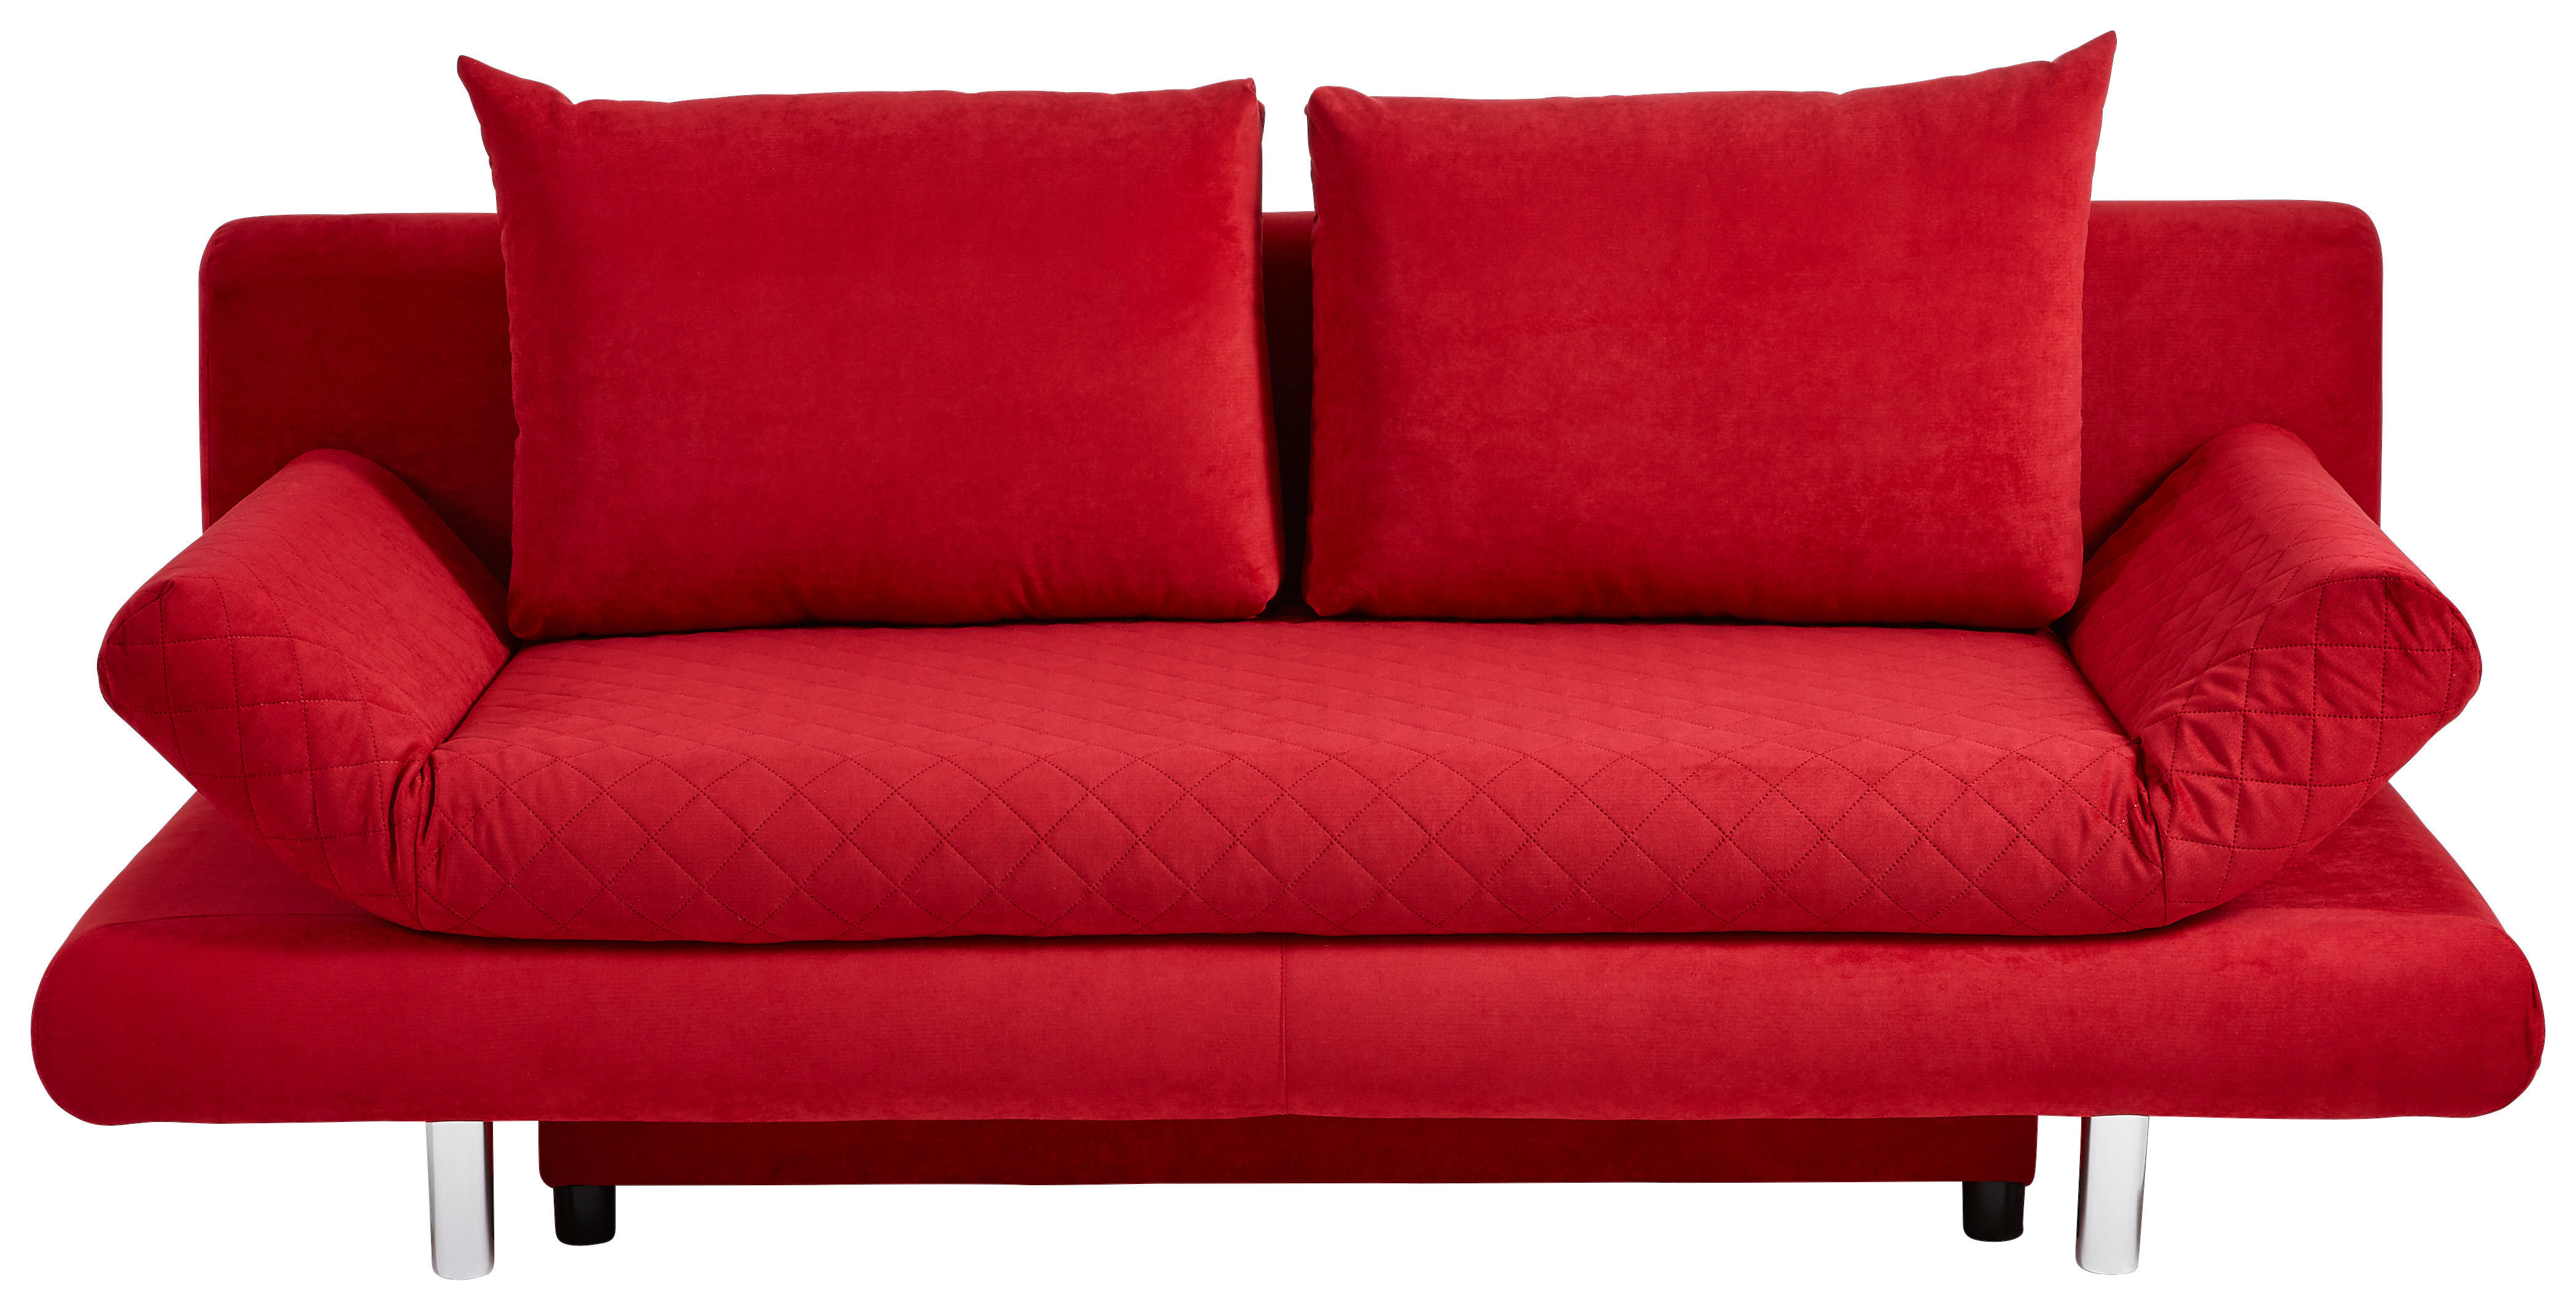 ROZKLADACIA POHOVKA, textil, červená - chrómová/červená, Modern, textil (194/73/91cm) - Xora